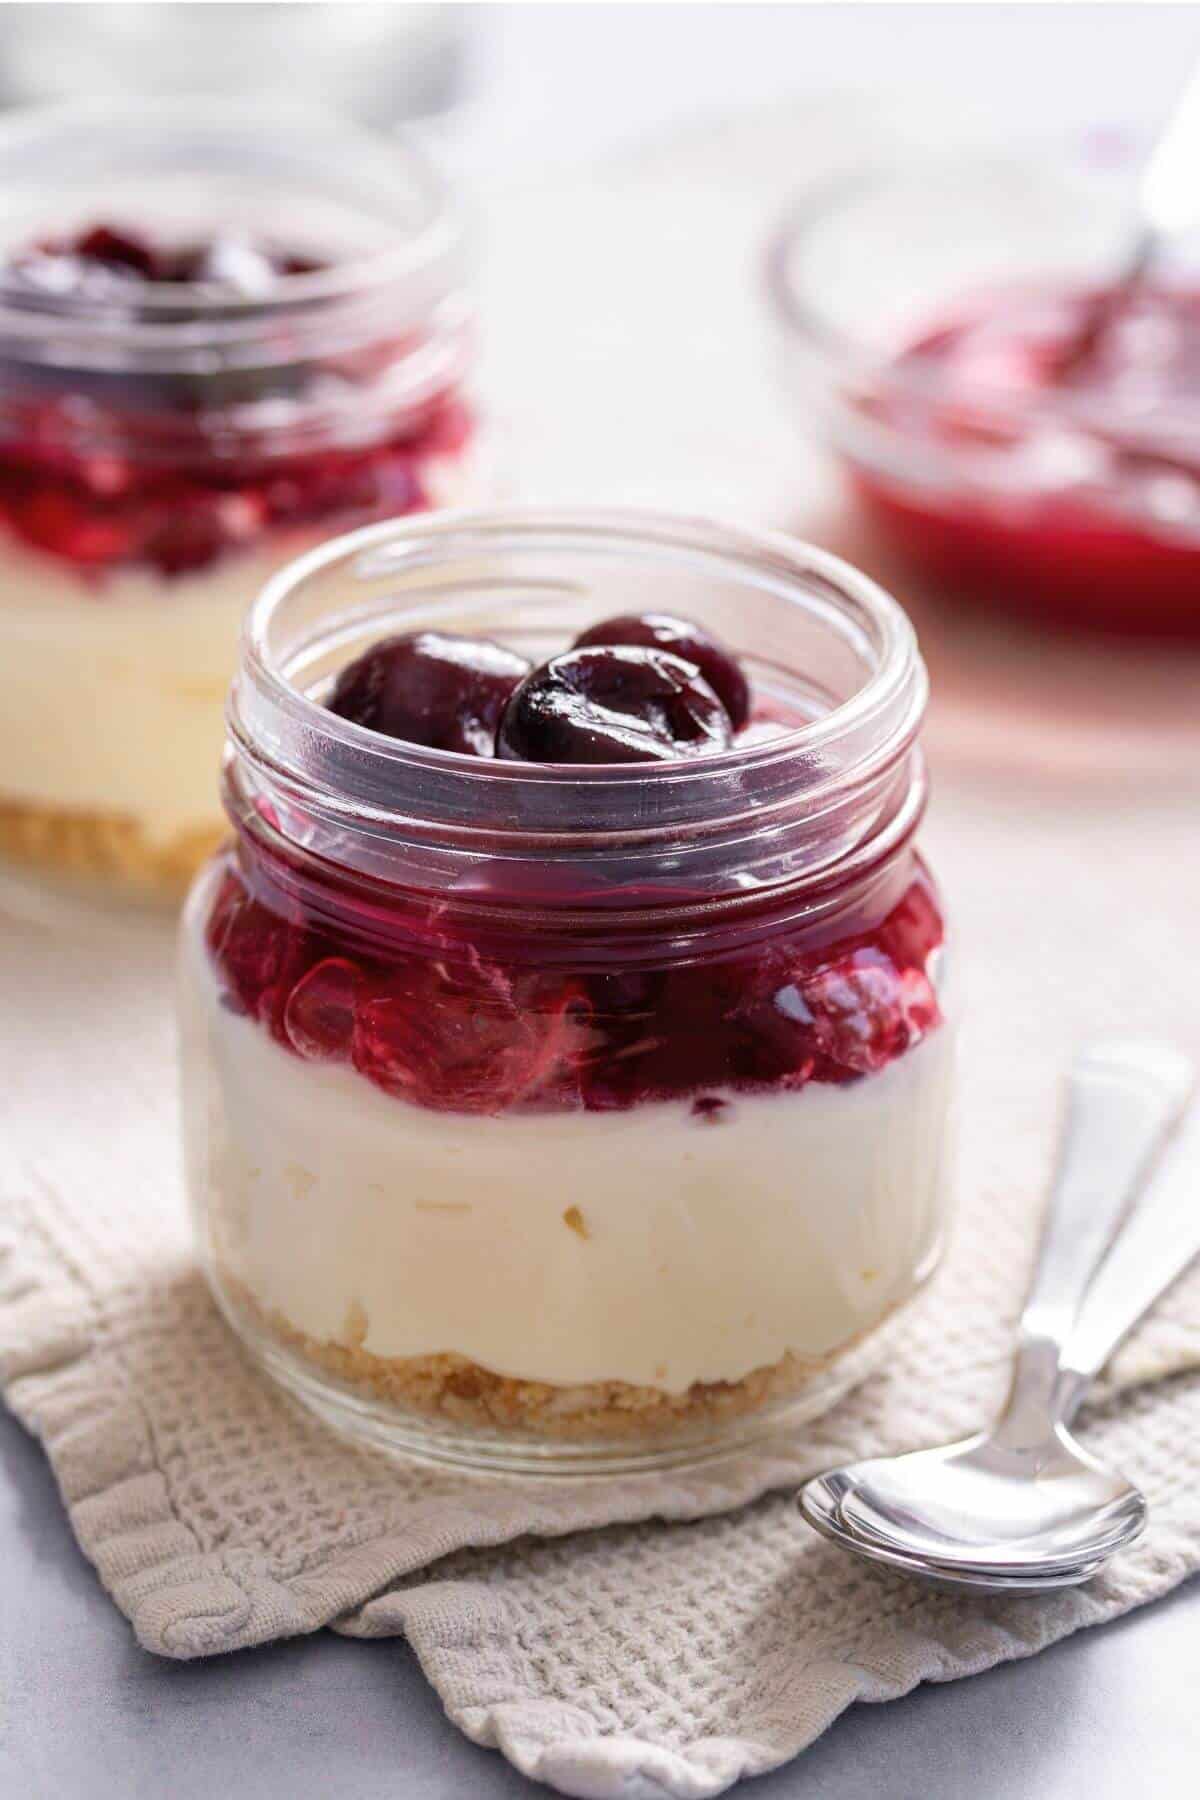 Cherry cheesecake in jars.